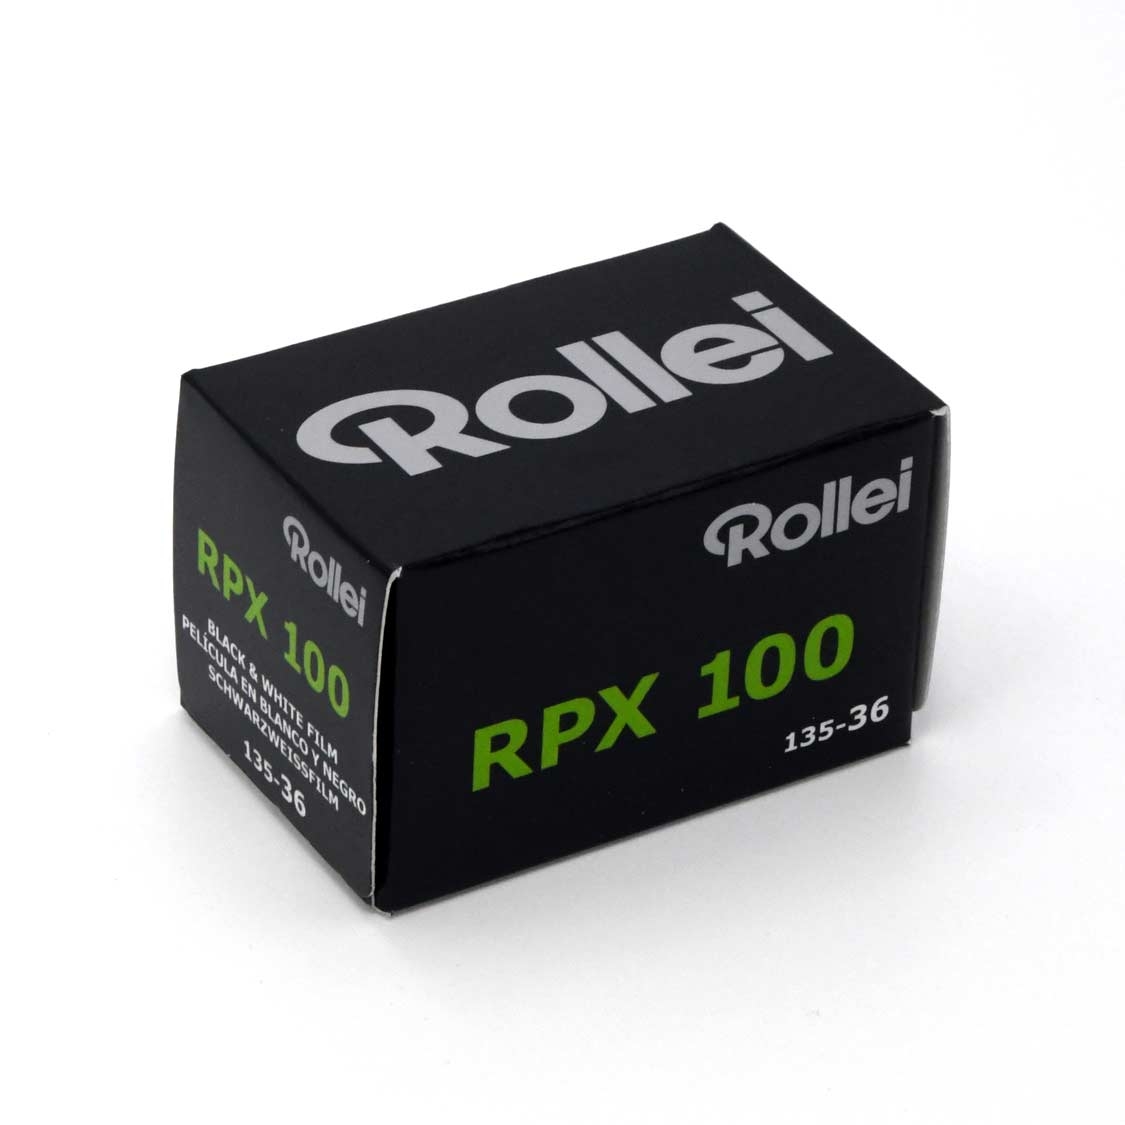 Rollei RPX 100 35mm Film (36 exposure)